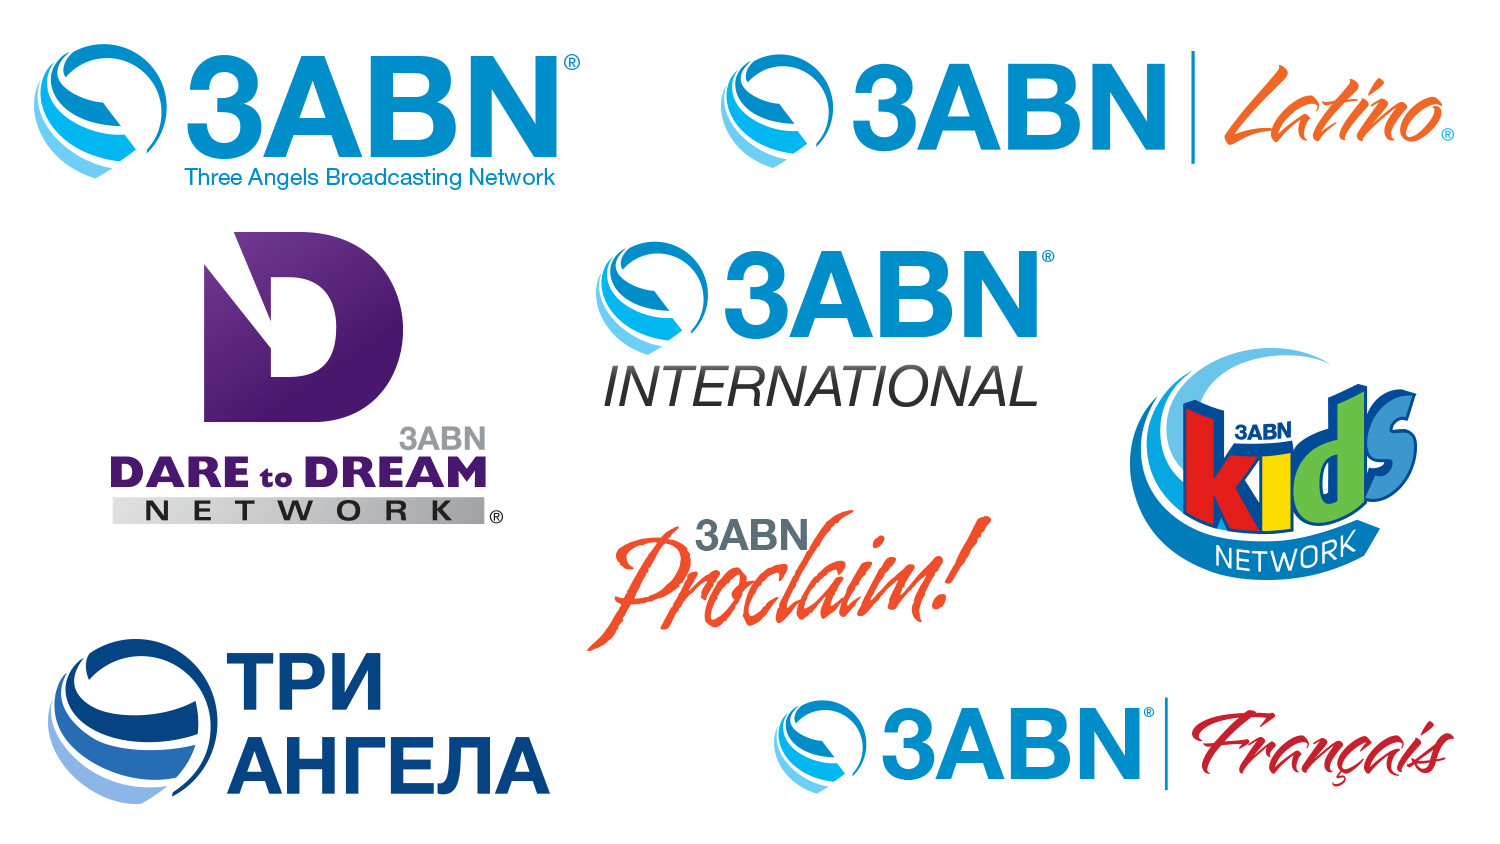 3ABN TV Network Logos